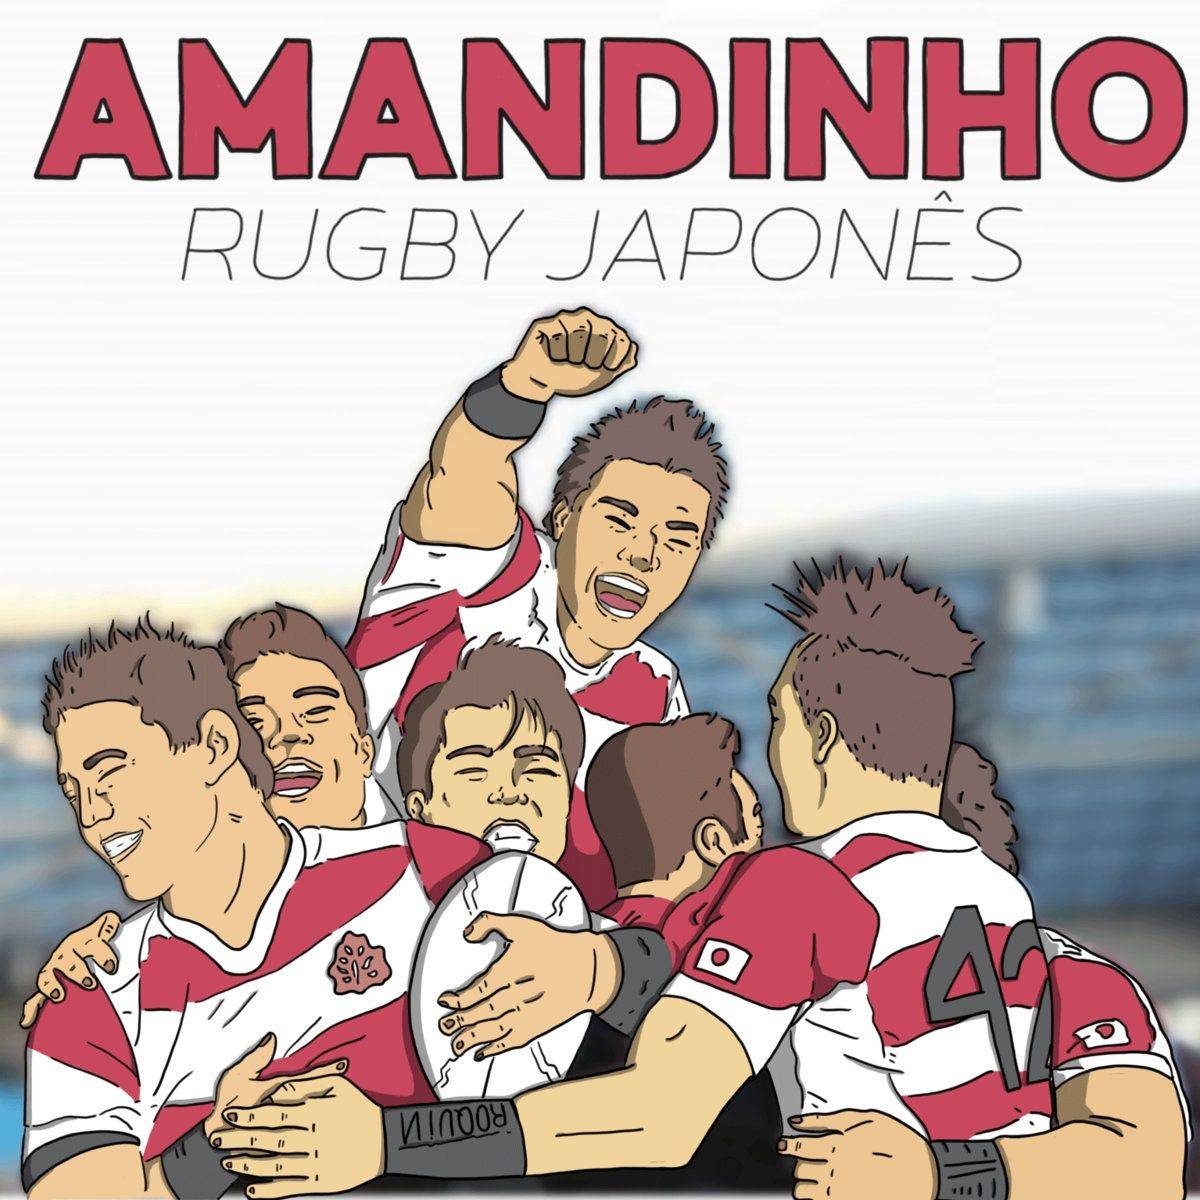 Rugby Japonês